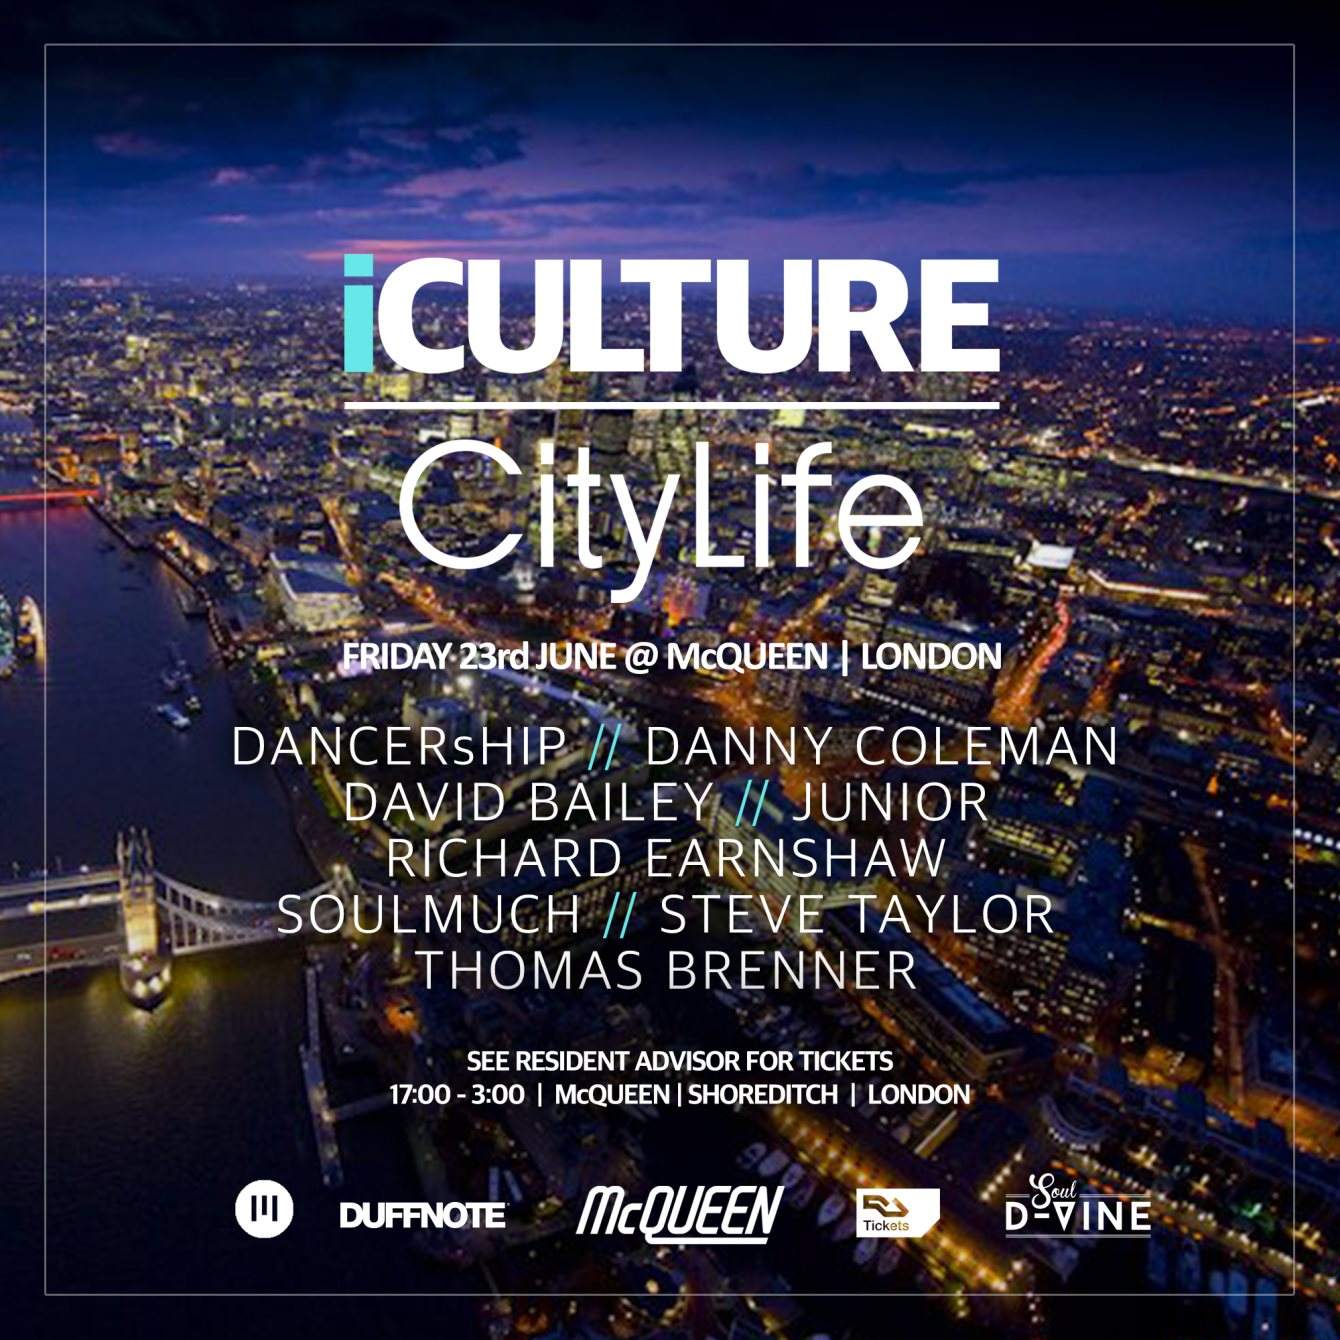 iCulture & Citylife present David Bailey, Deeptown & Dancership - フライヤー表